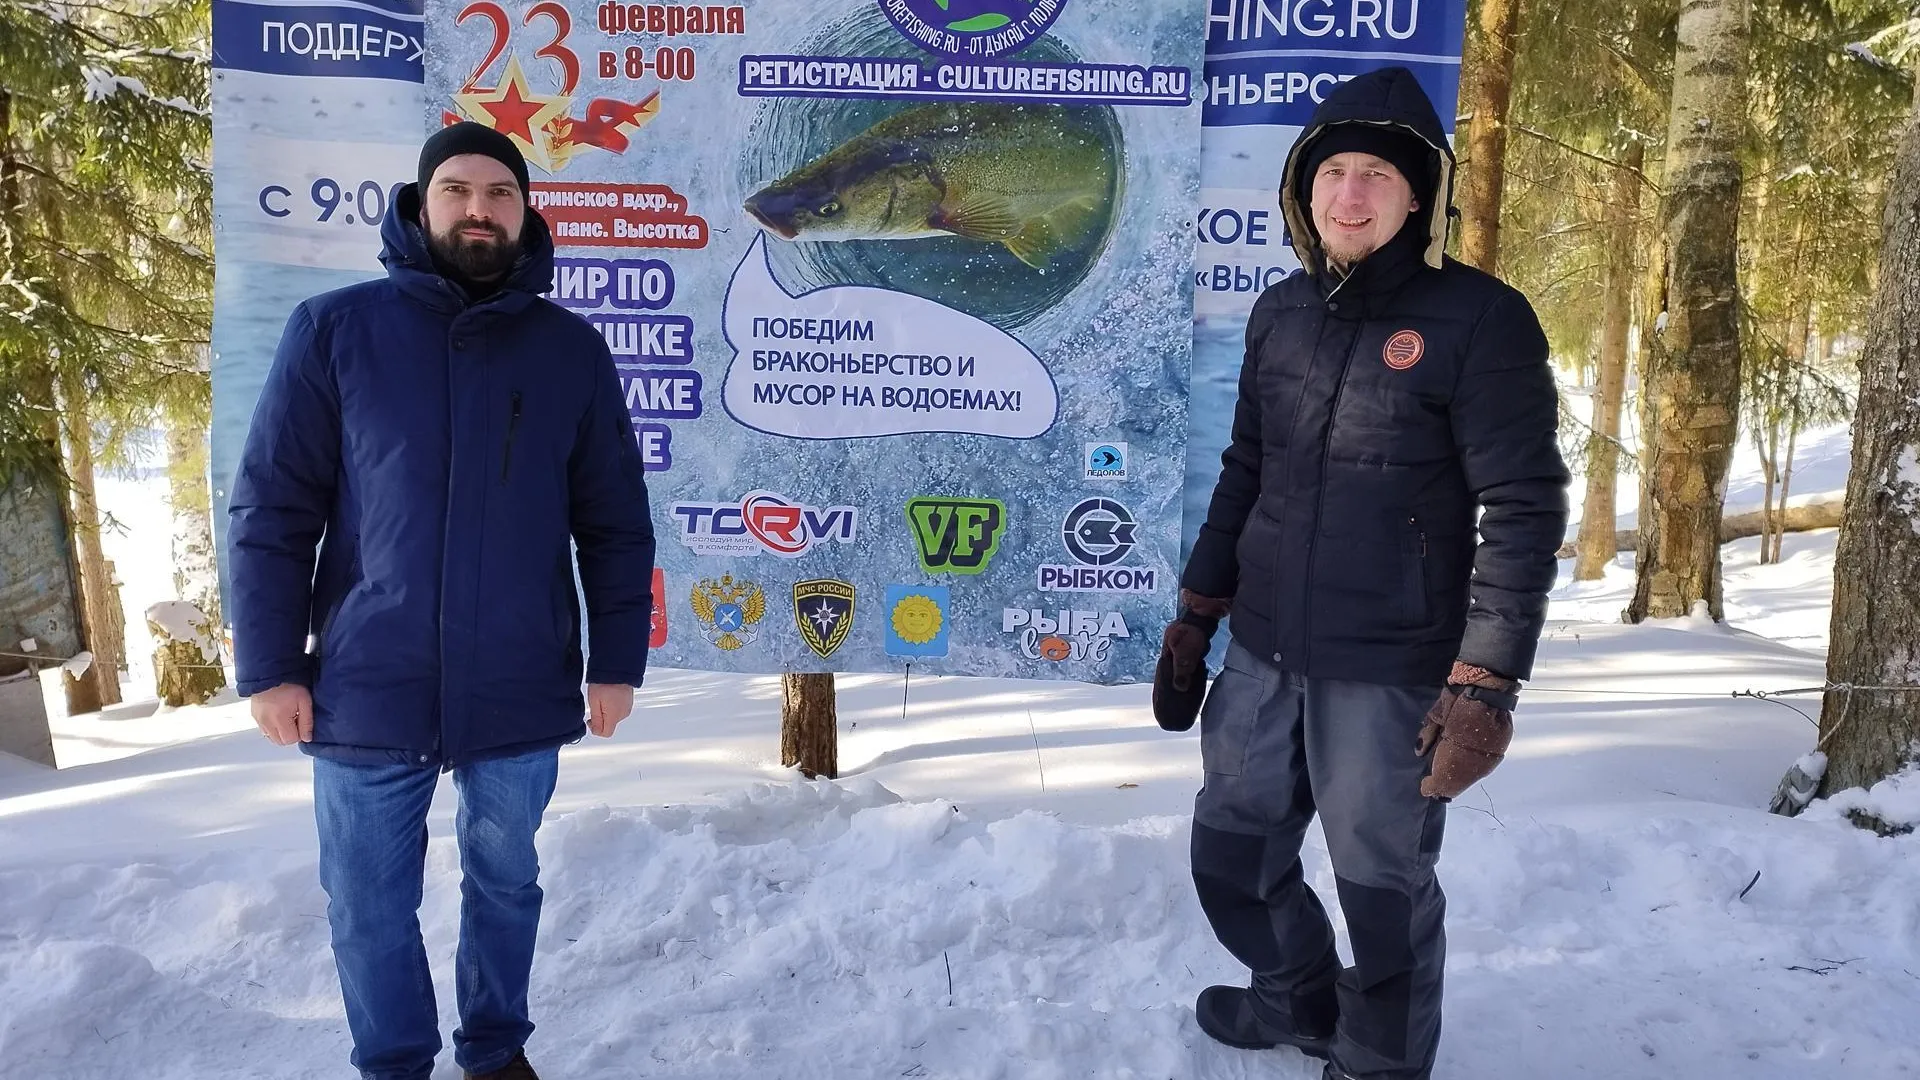 Рыболовный турнир в честь 23 февраля состоялся в подмосковной Истре